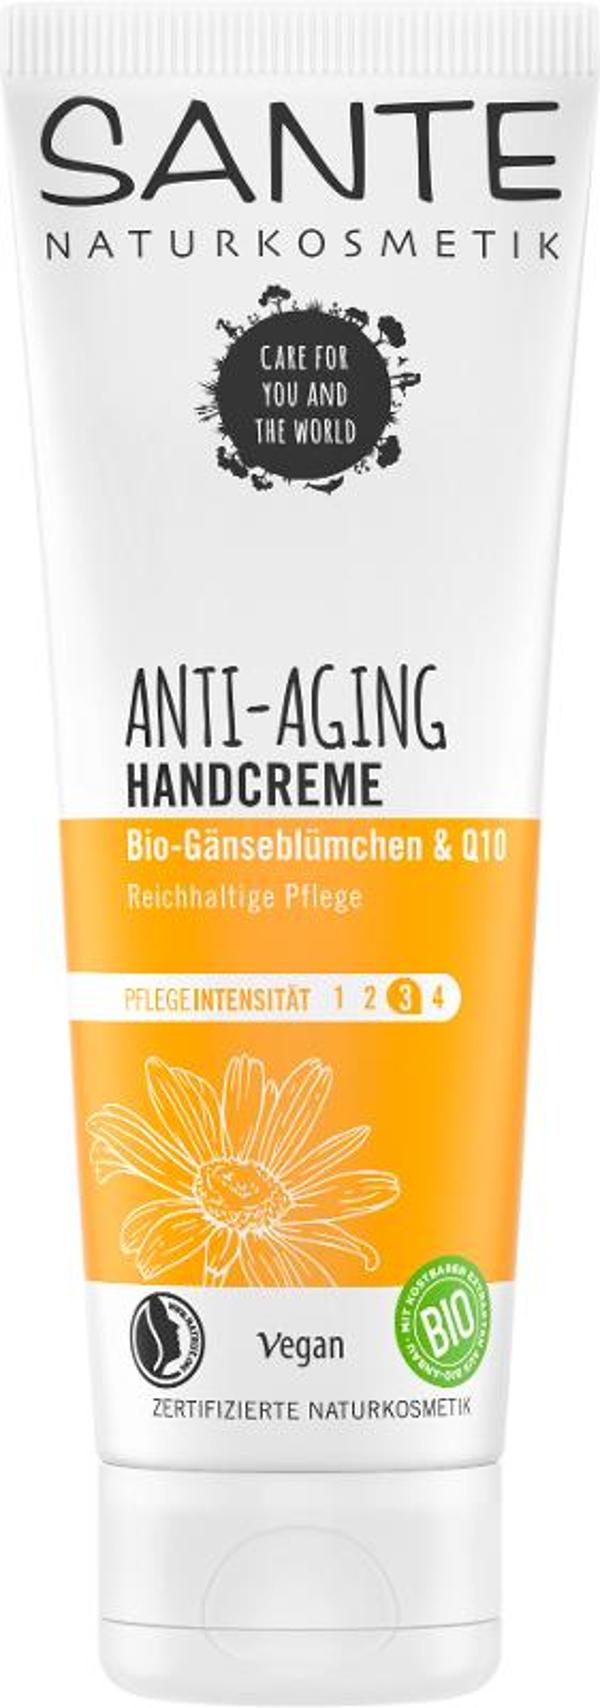 Produktfoto zu ANTI AGING Handcreme Gänseblümchen & Q10 75ml